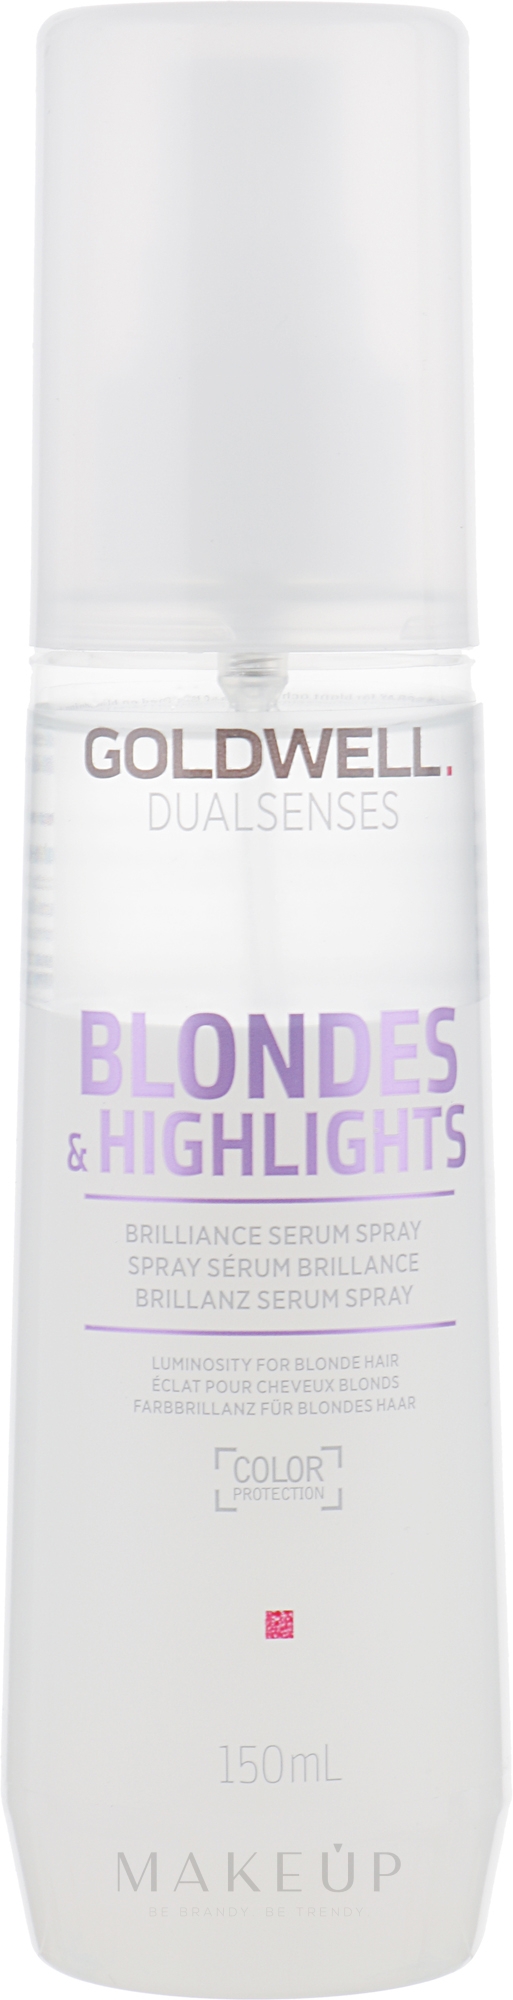 Brillanz Serum Spray für blondes und gesträhntes Haar - Goldwell Dualsenses Blondes & Highlights Brilliance Serum Spray — Foto 150 ml